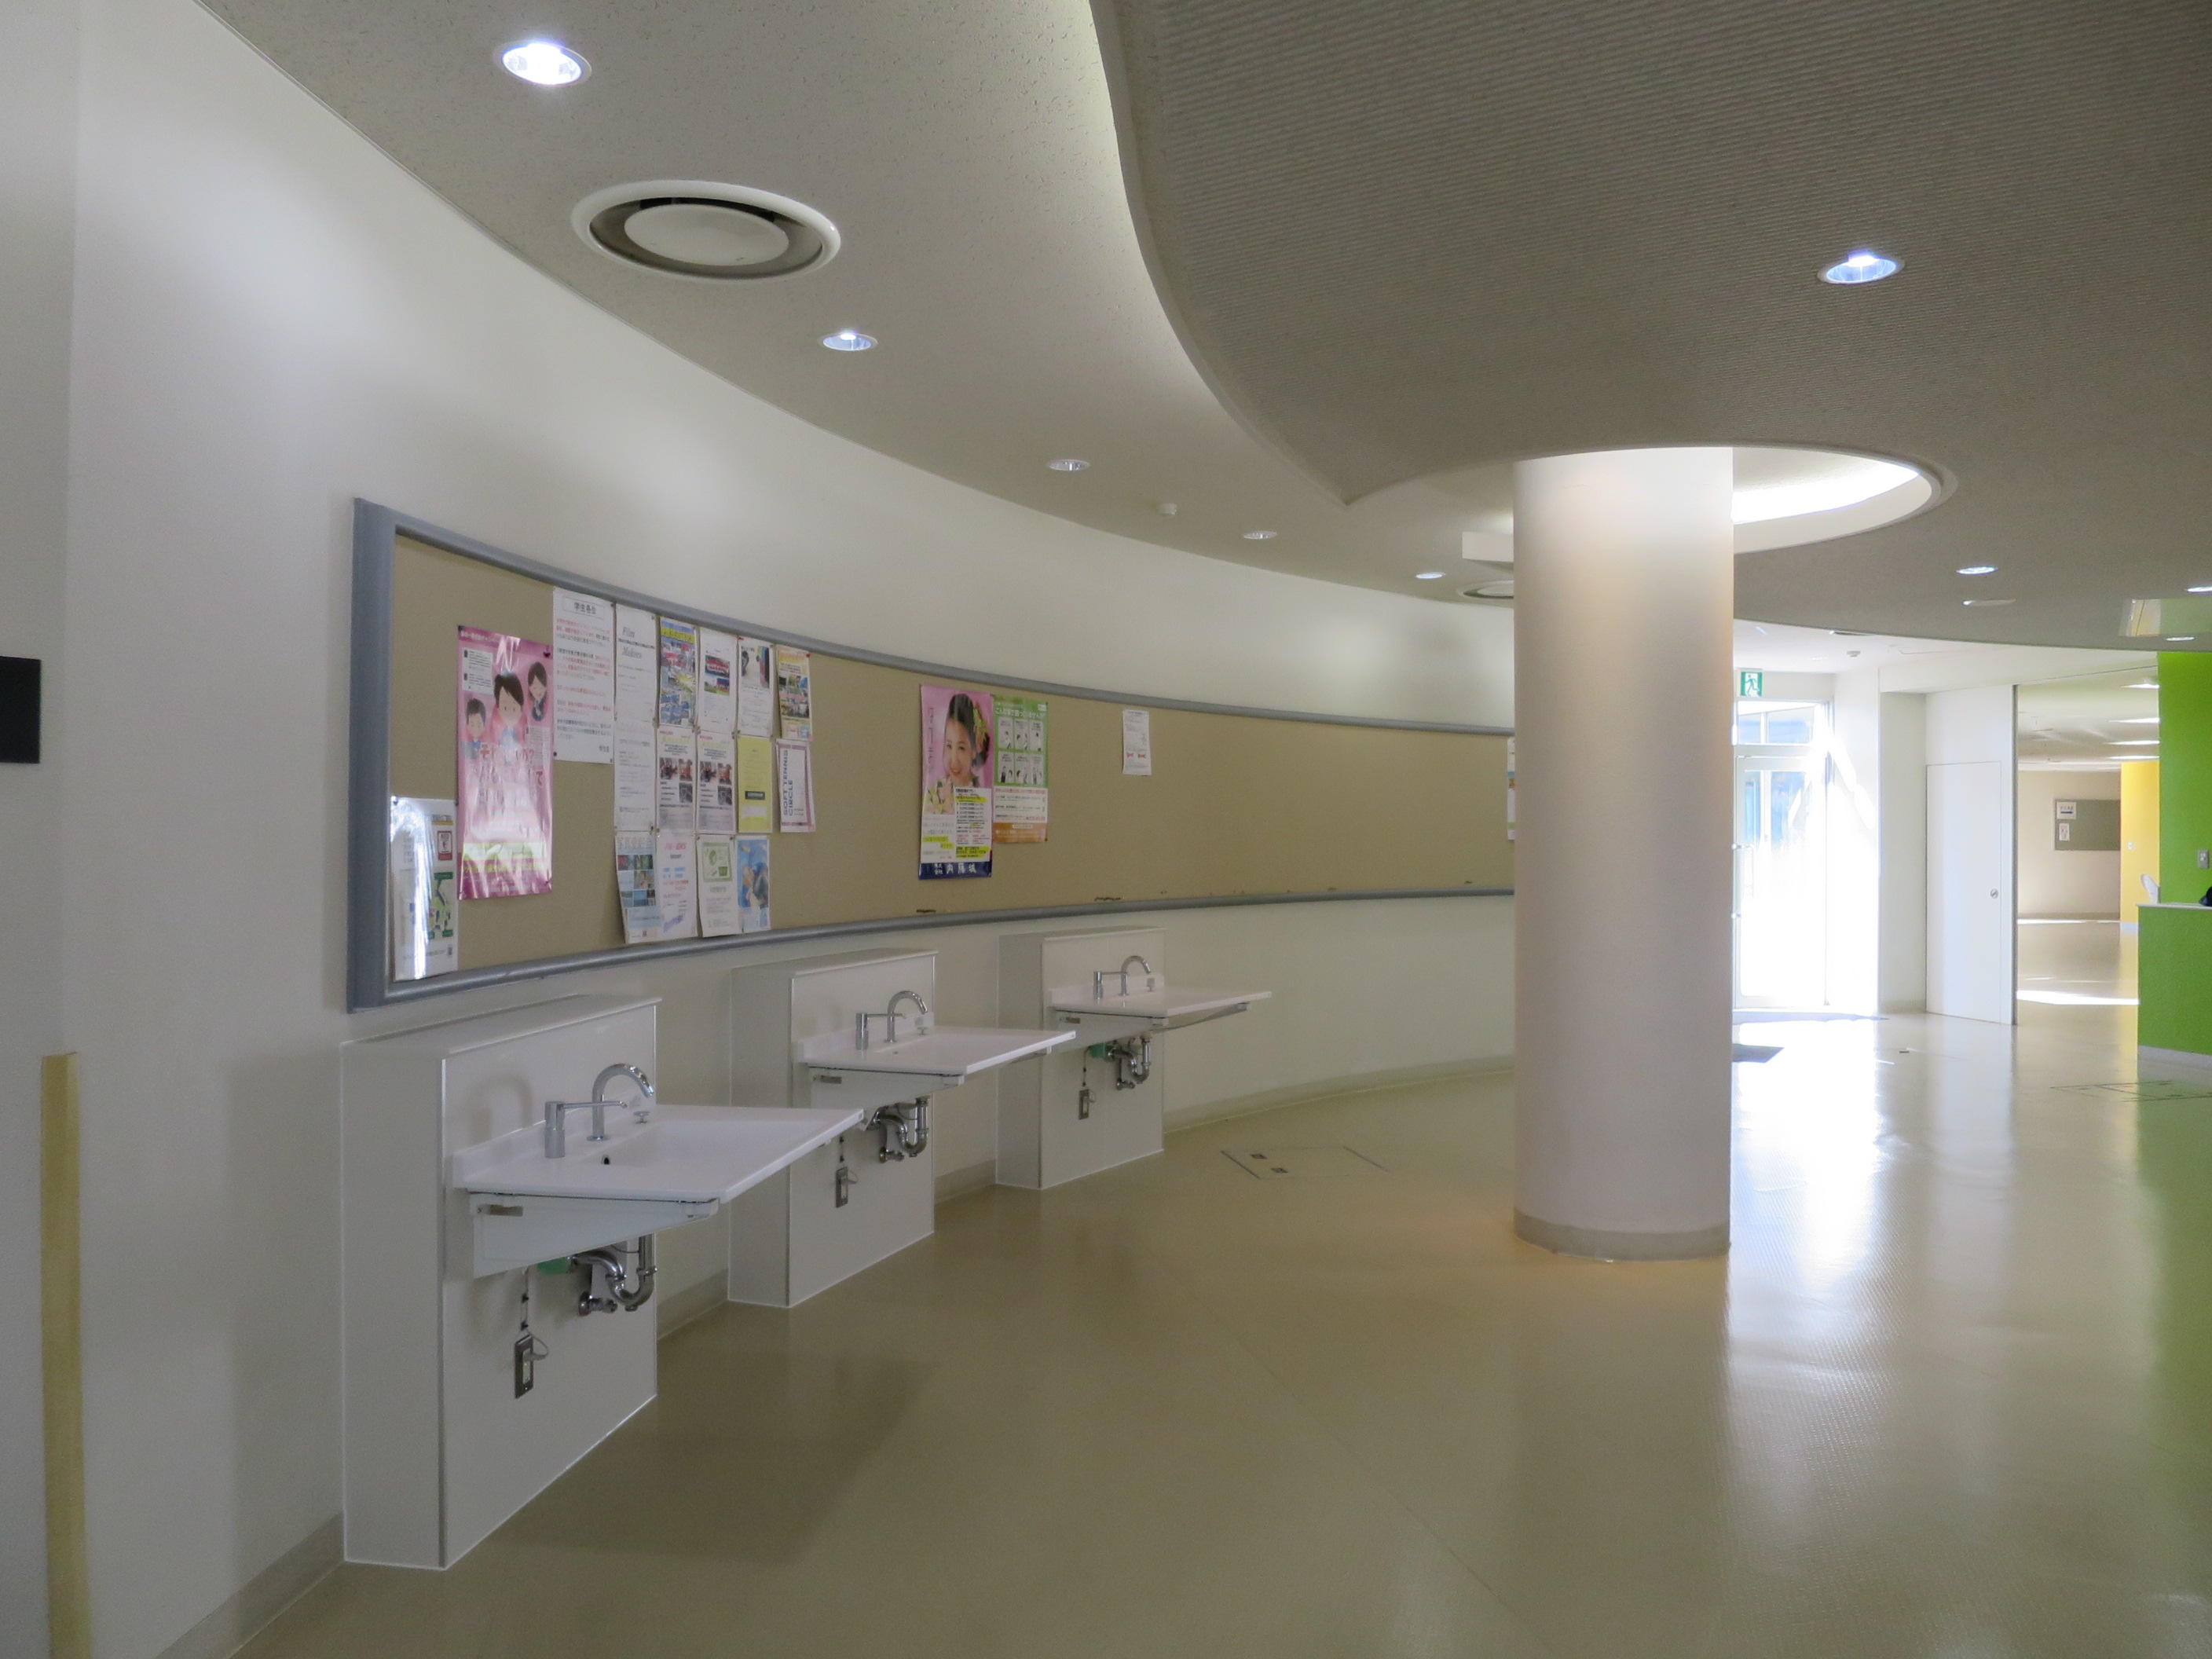 江戸川大学が新型コロナウイルス感染症対策として各棟エントランスに手洗い場を増設